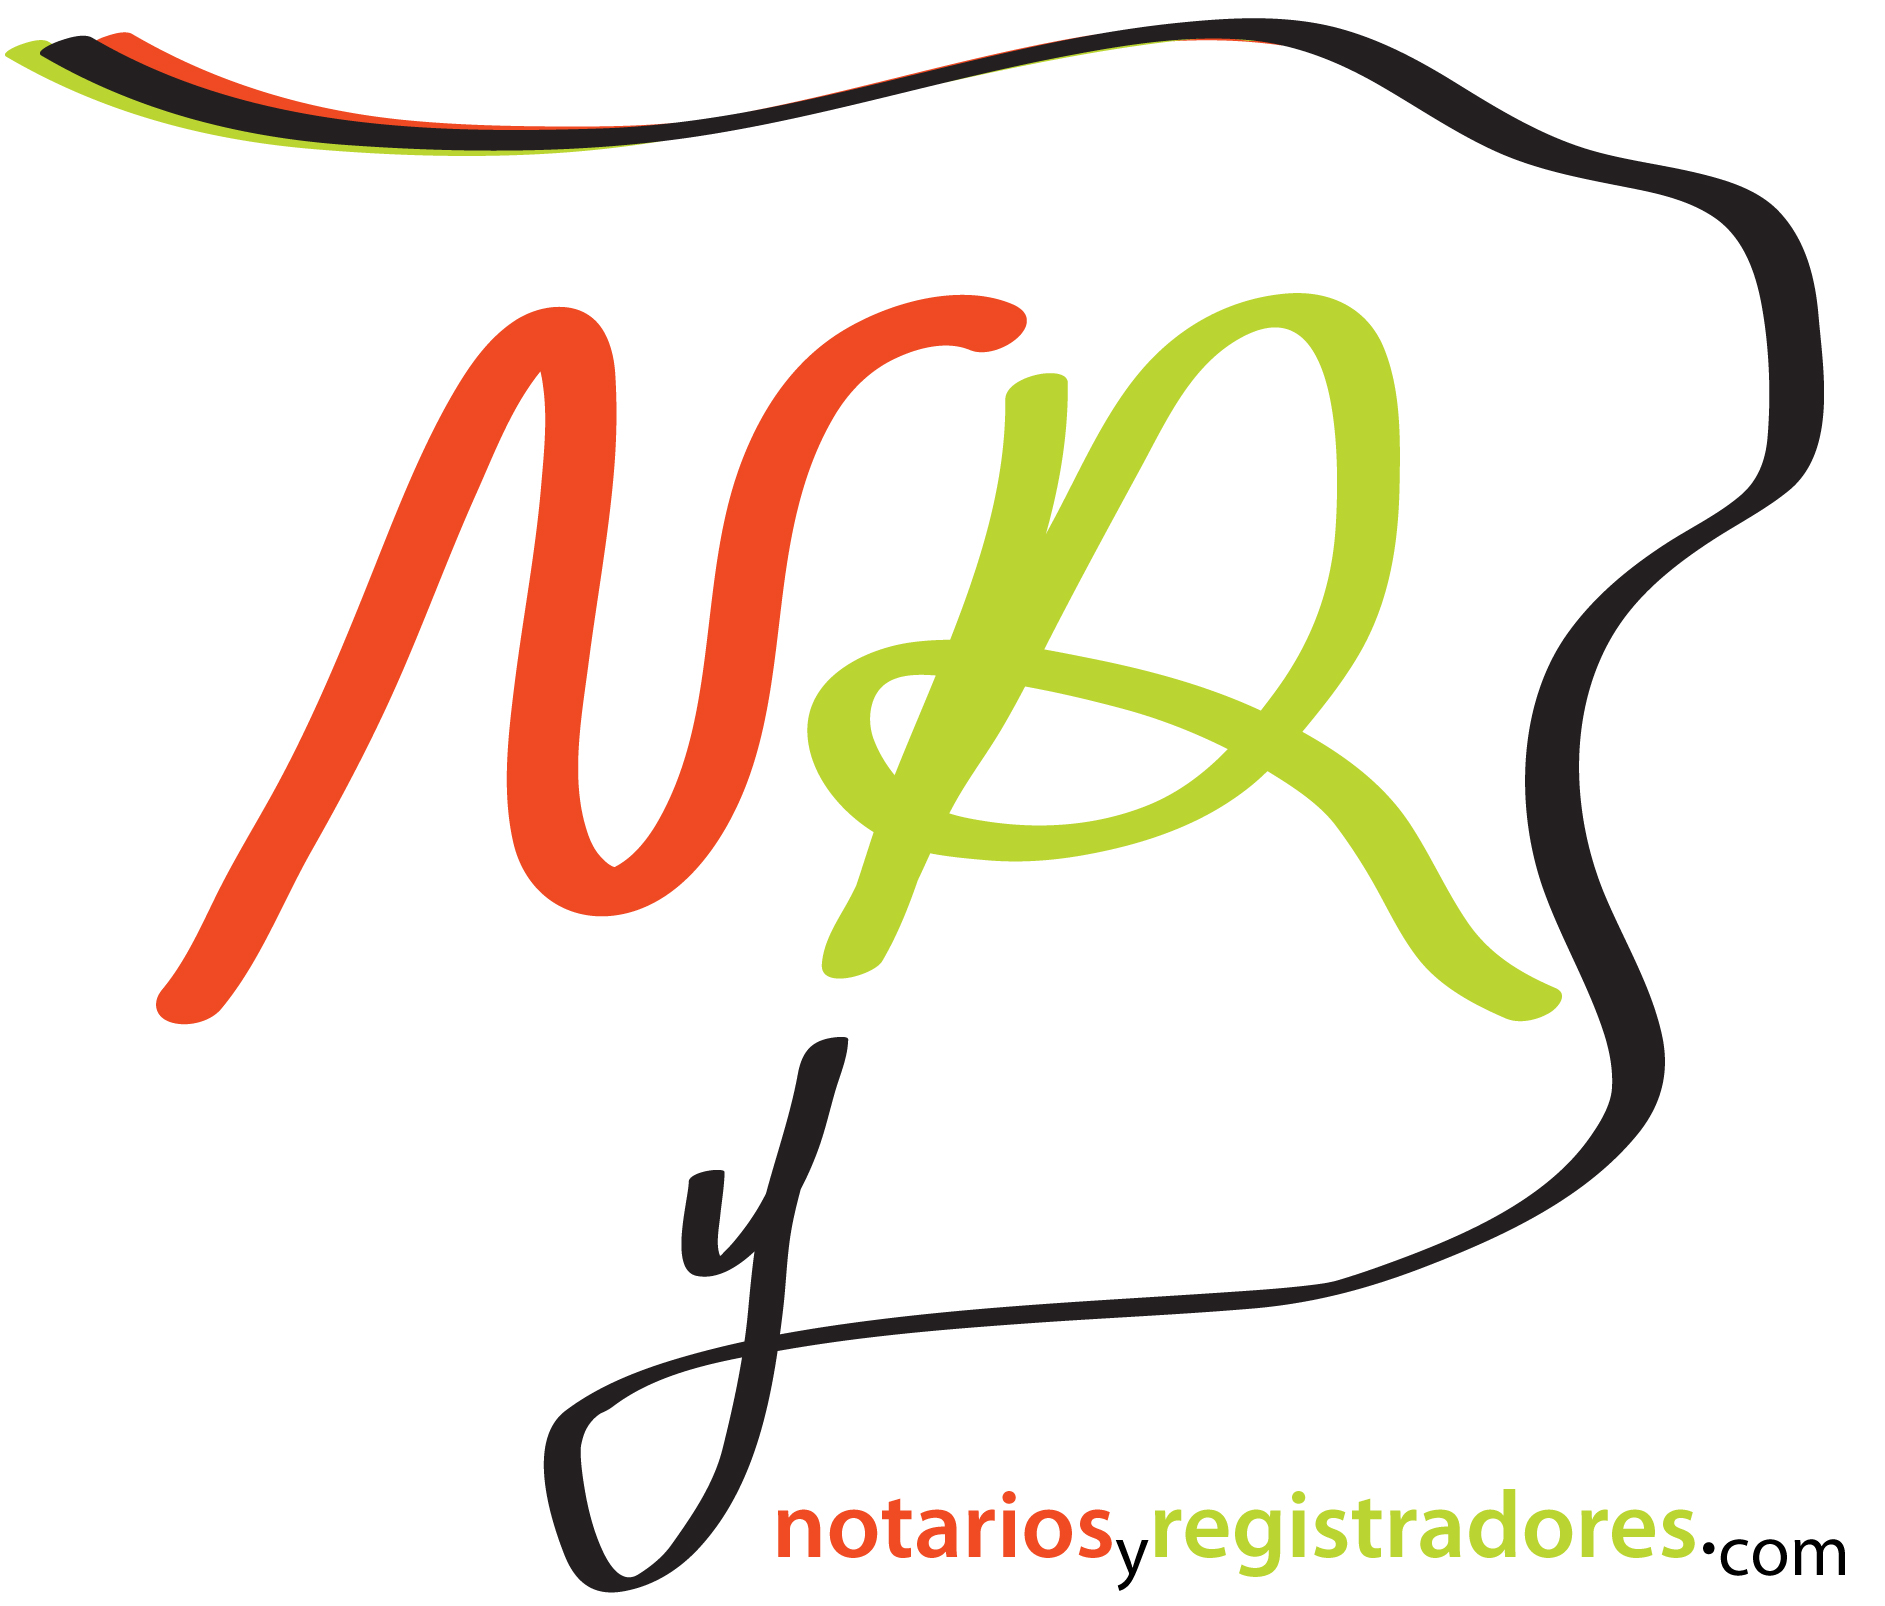 LOGO de www.notariosyregistradores.com